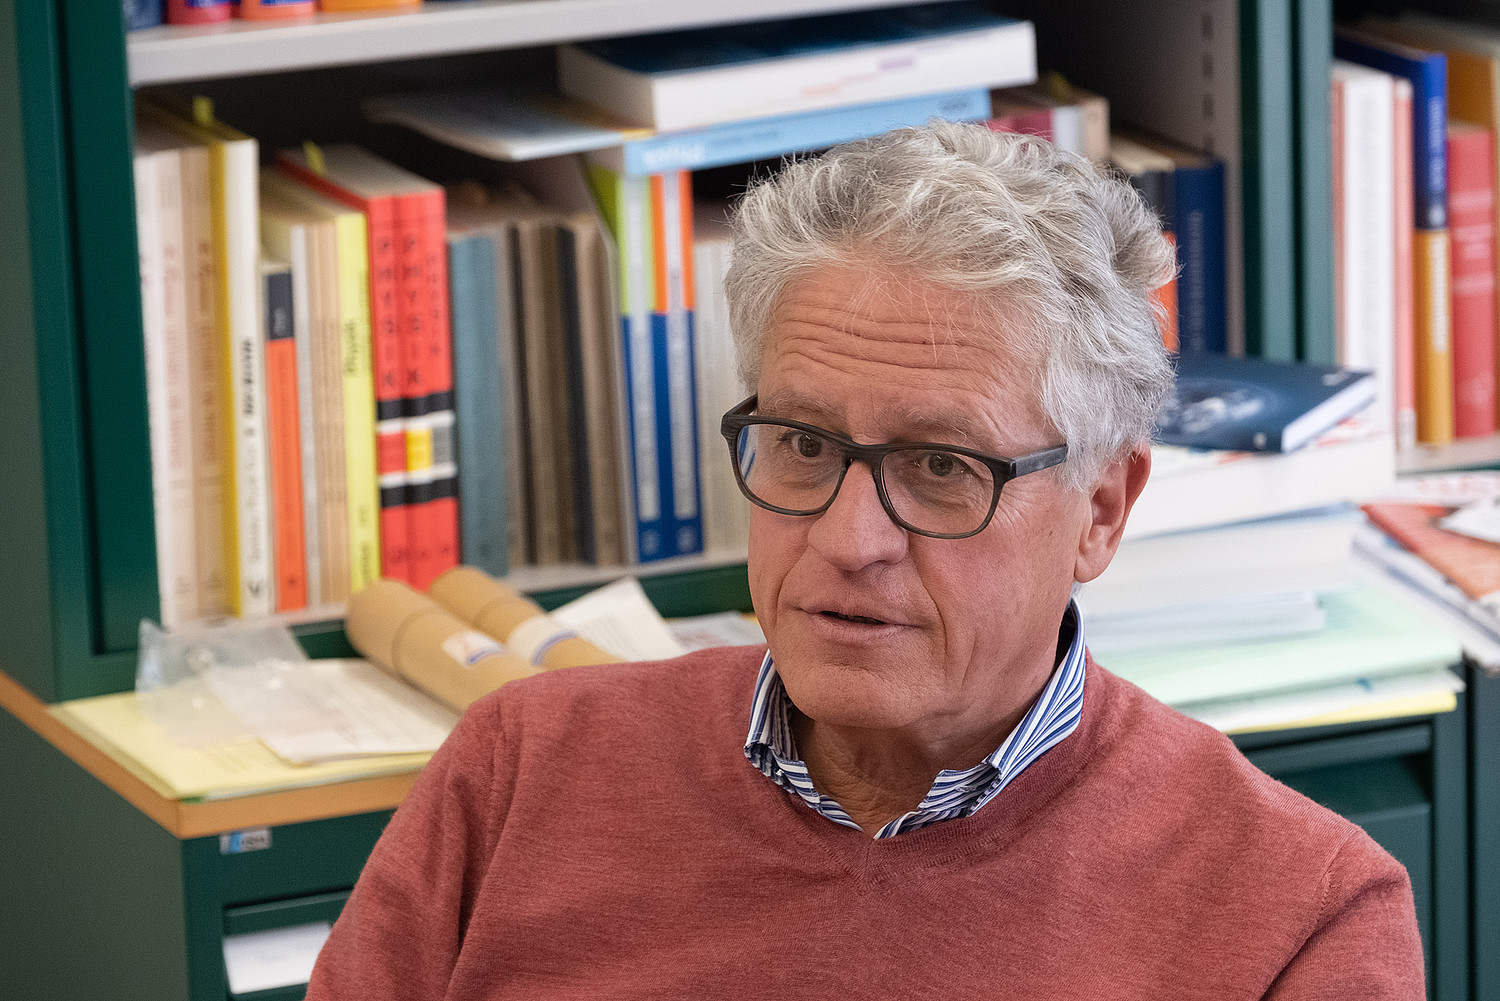 Thomas Stocker ist Professor für Klima- und Umweltphysik an der Universität Bern und einer der weltweit führenden Klimaforscher.